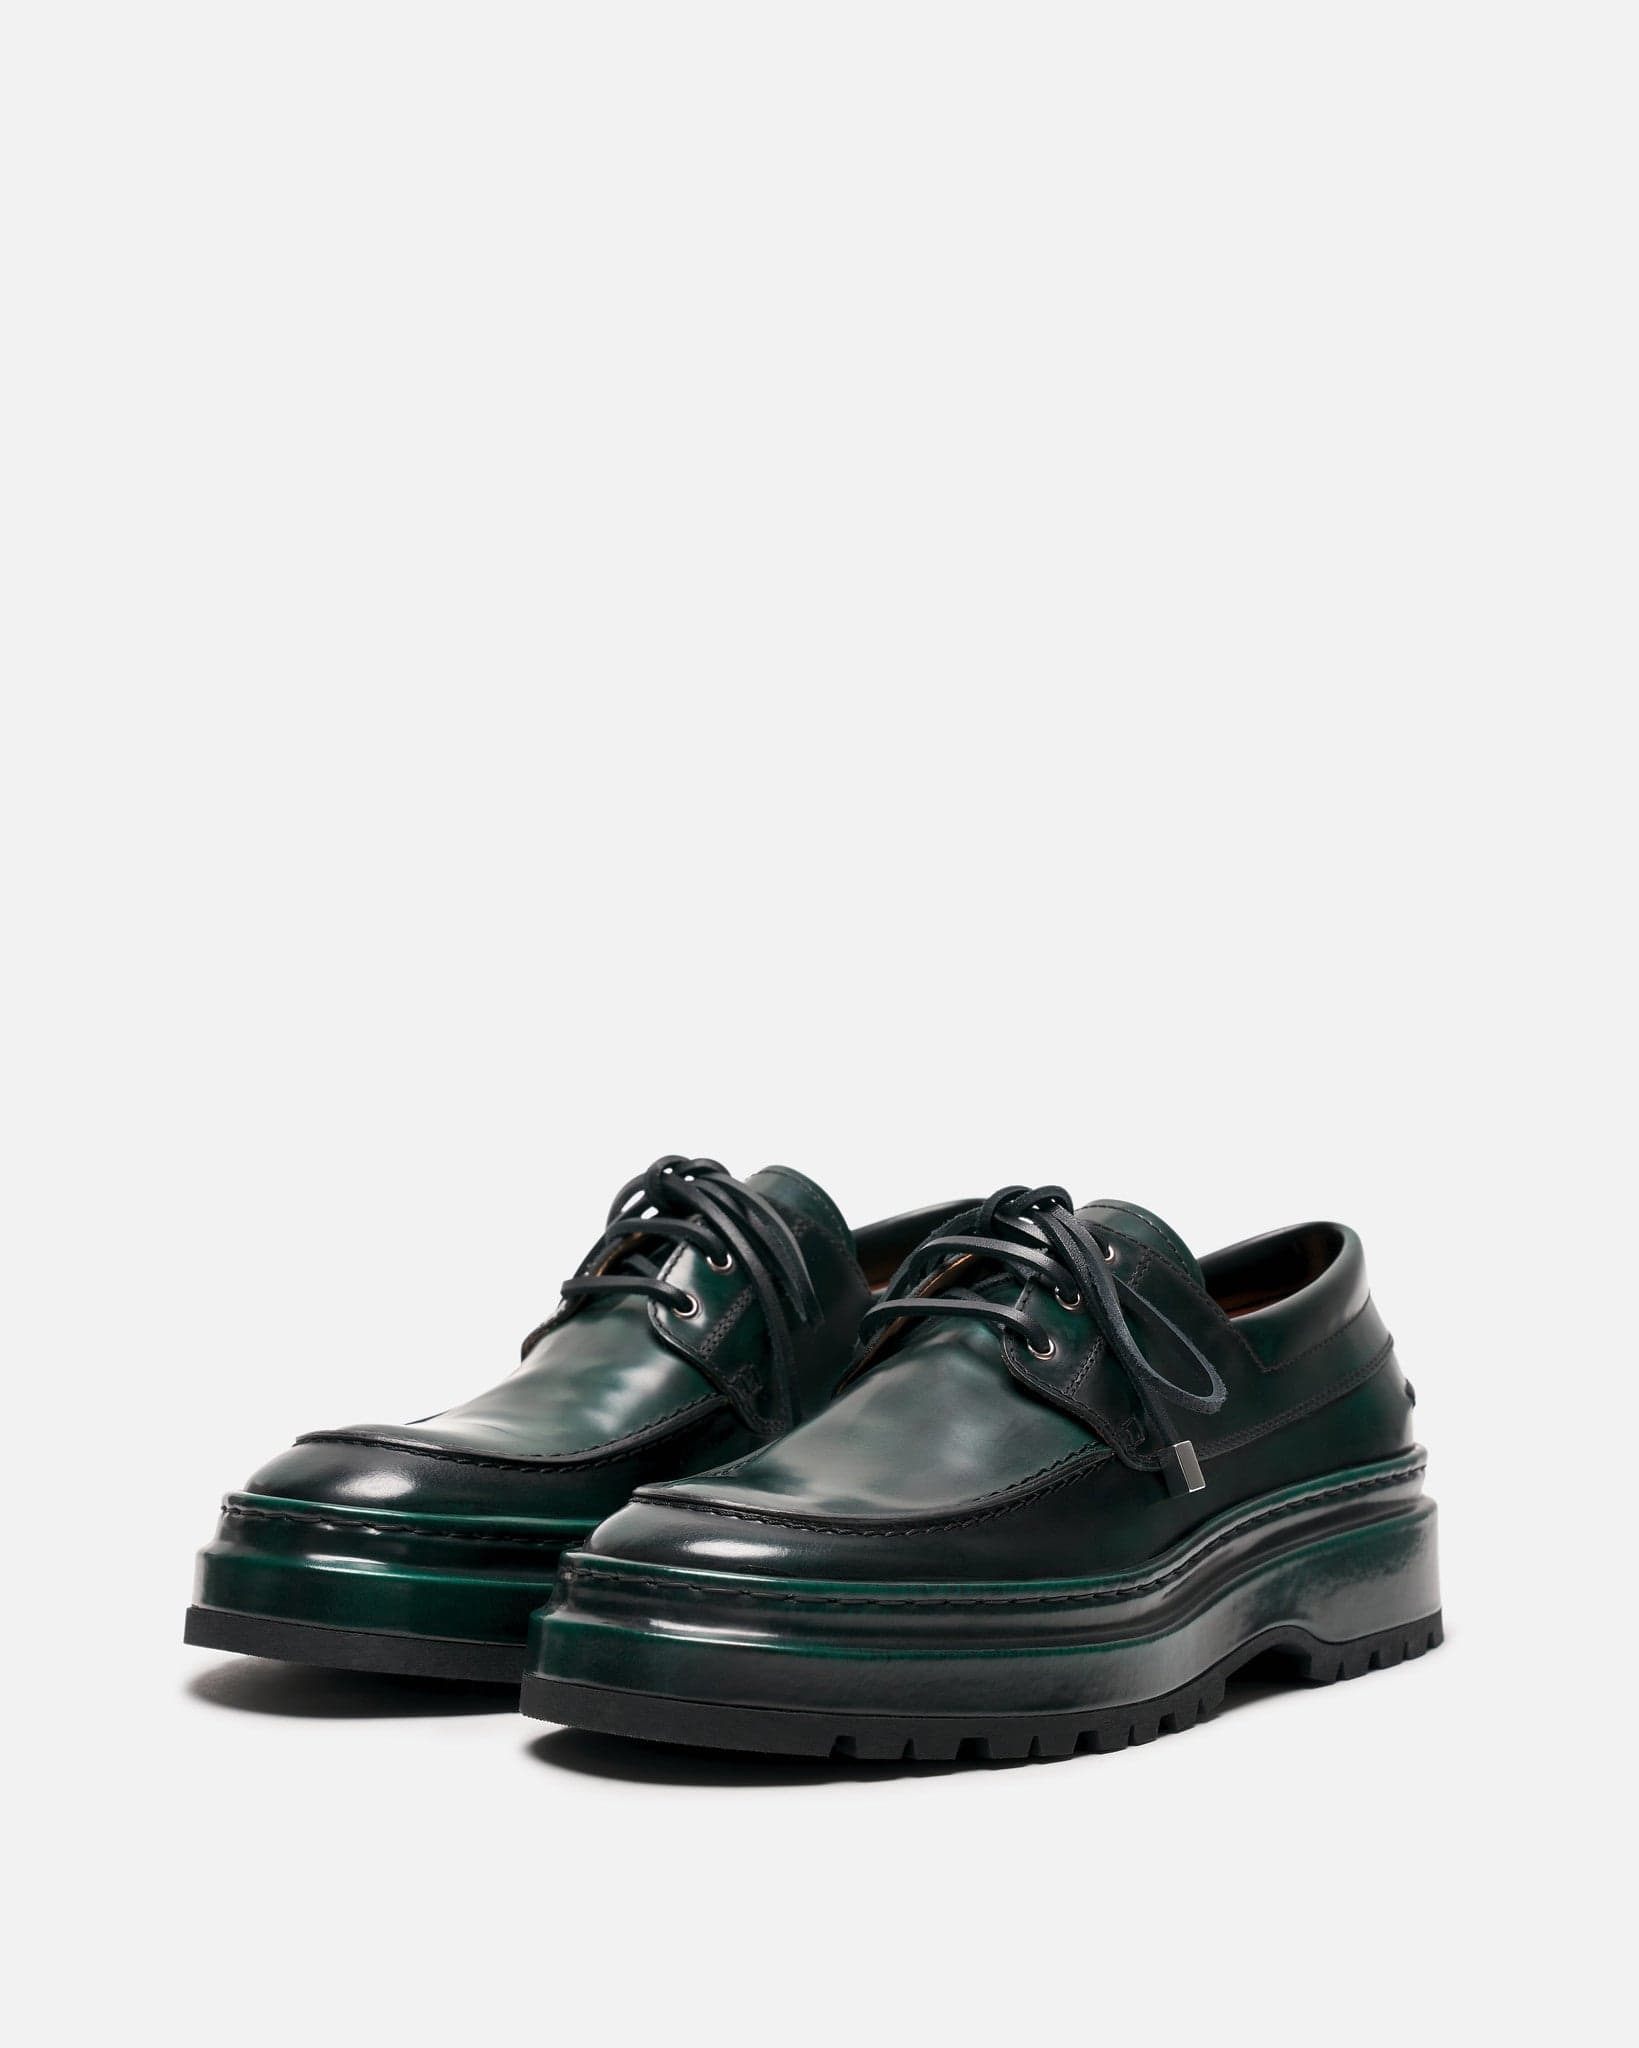 Jacquemus Men's Shoes Les Bateau Pavane in Dark Green